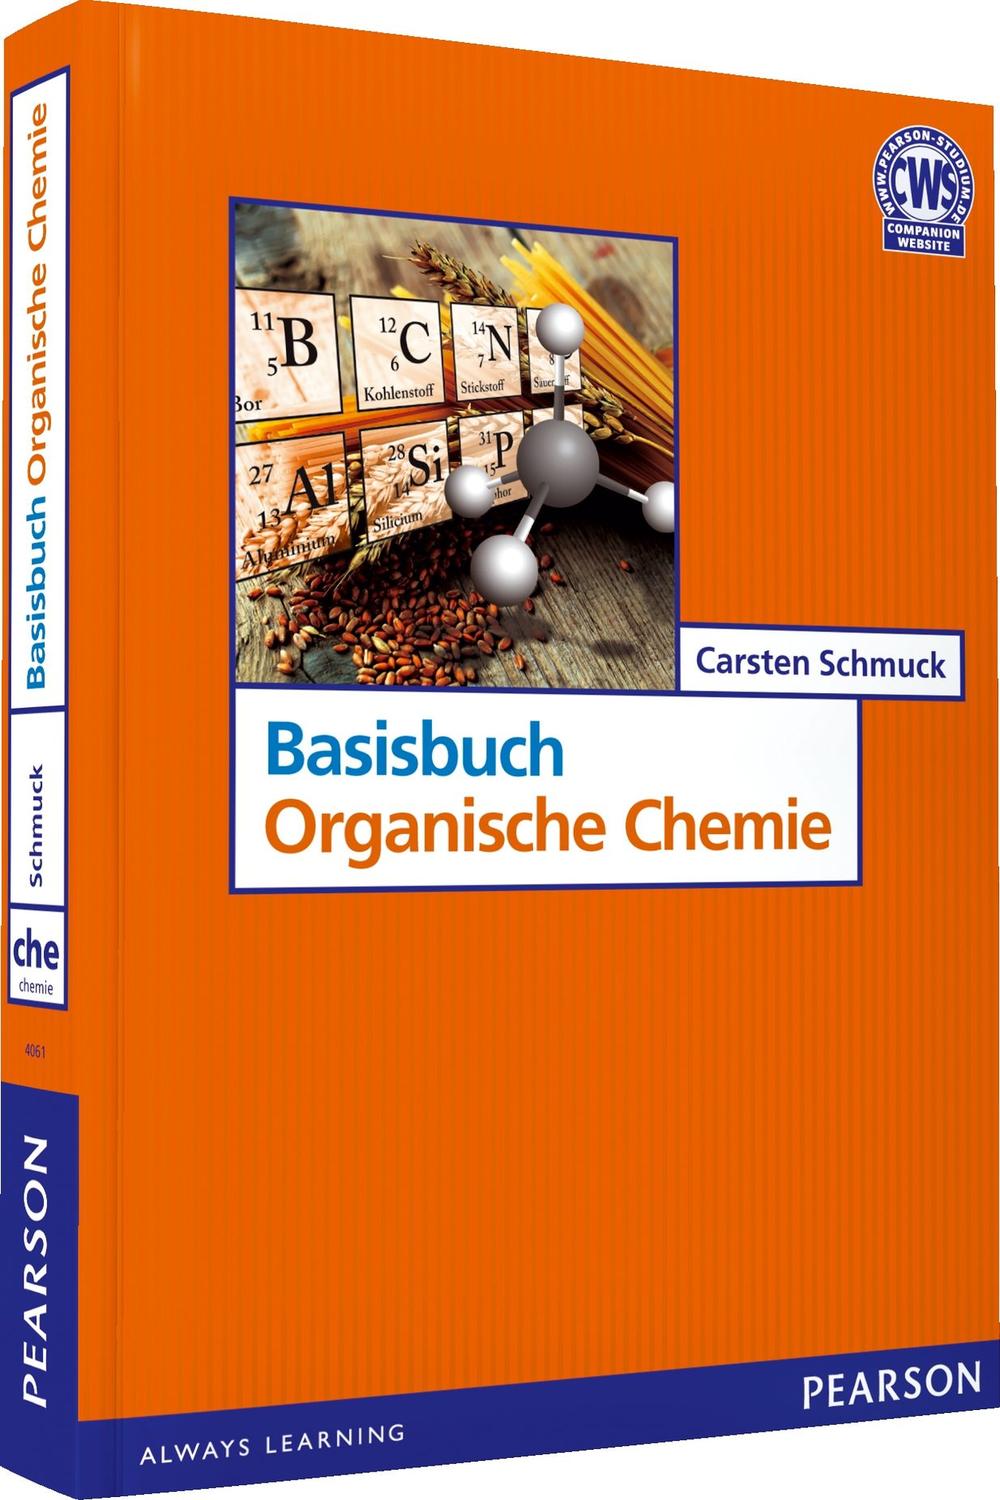 Basisbuch Organische Chemie - Carsten Schmuck,,